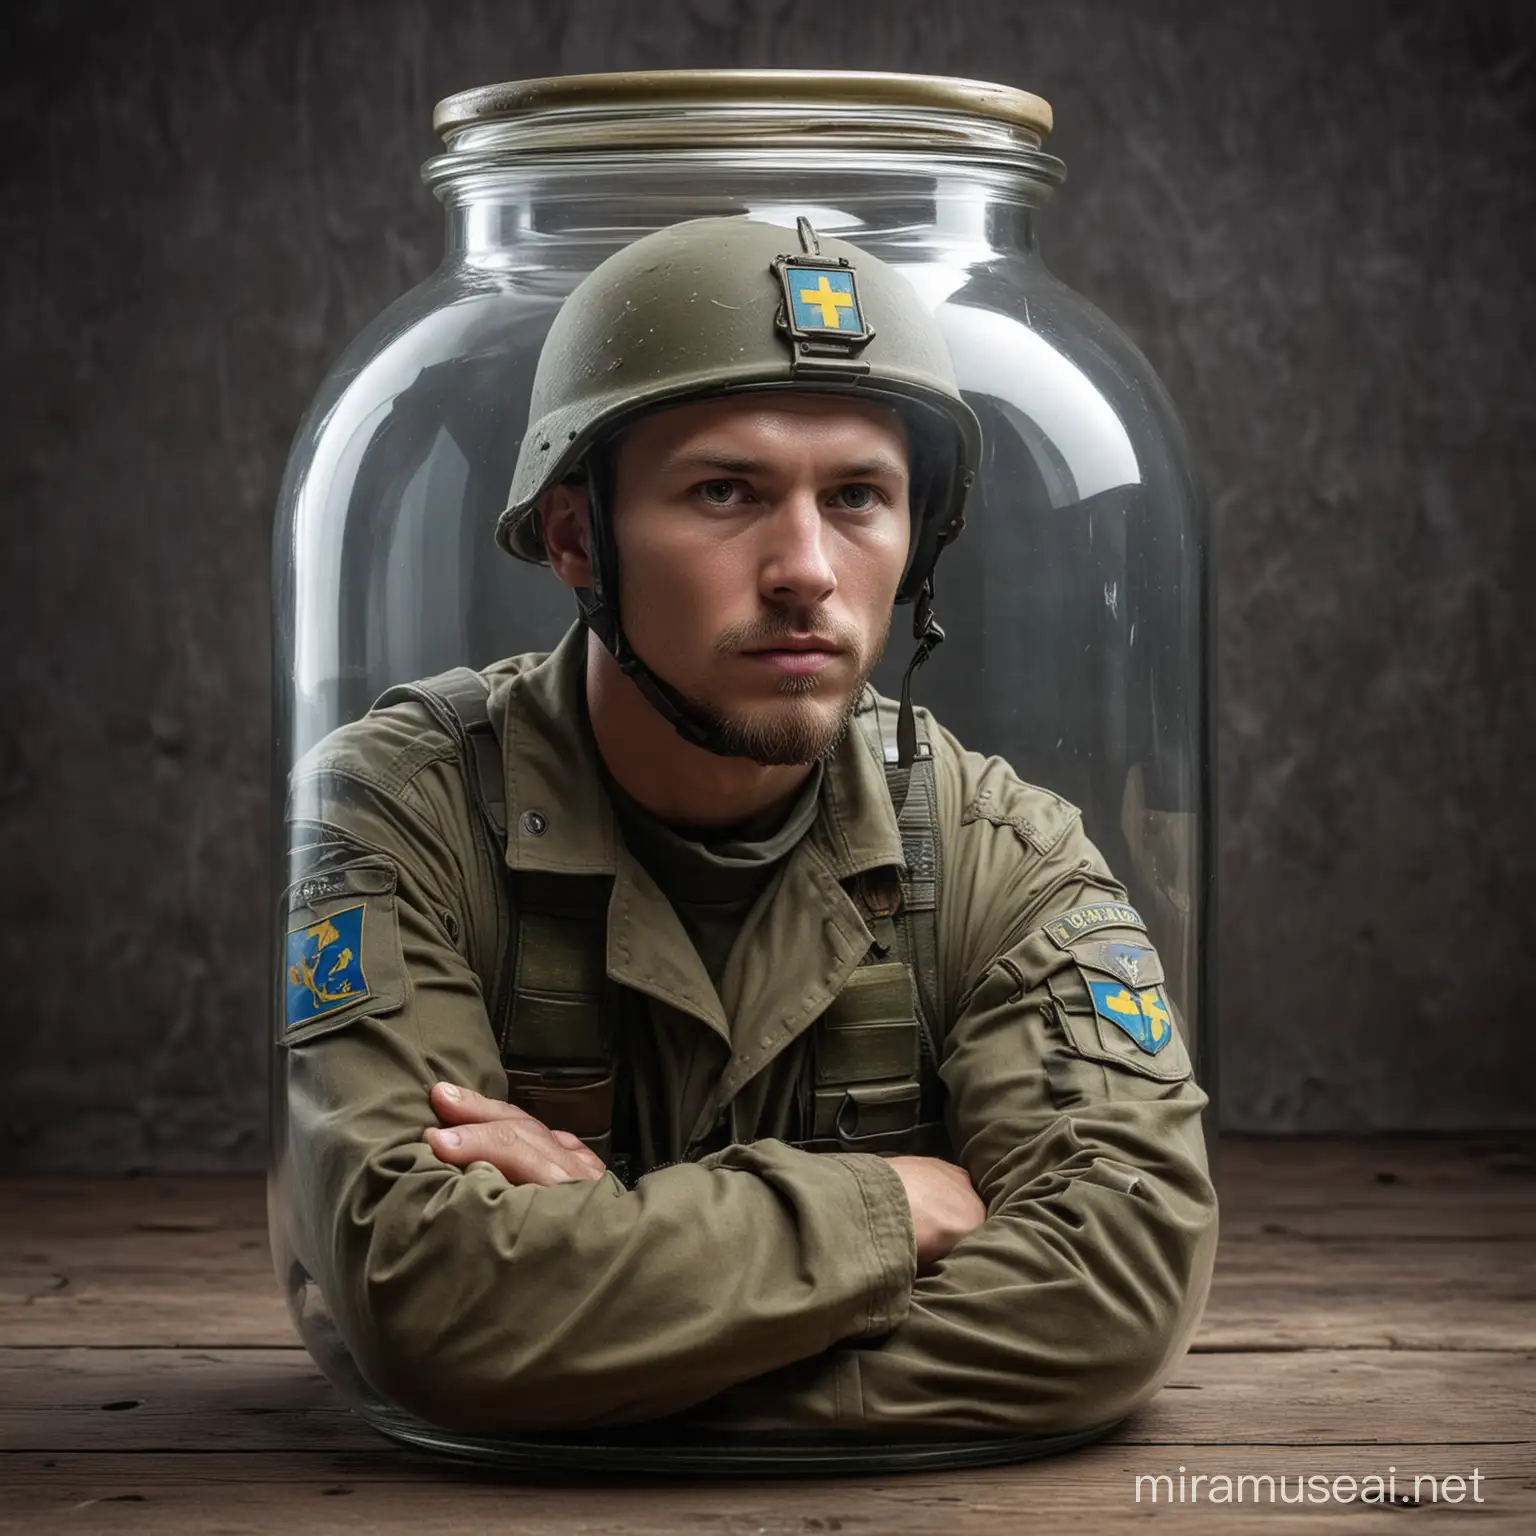 Ukrainian Soldier in Encased Combat Gear